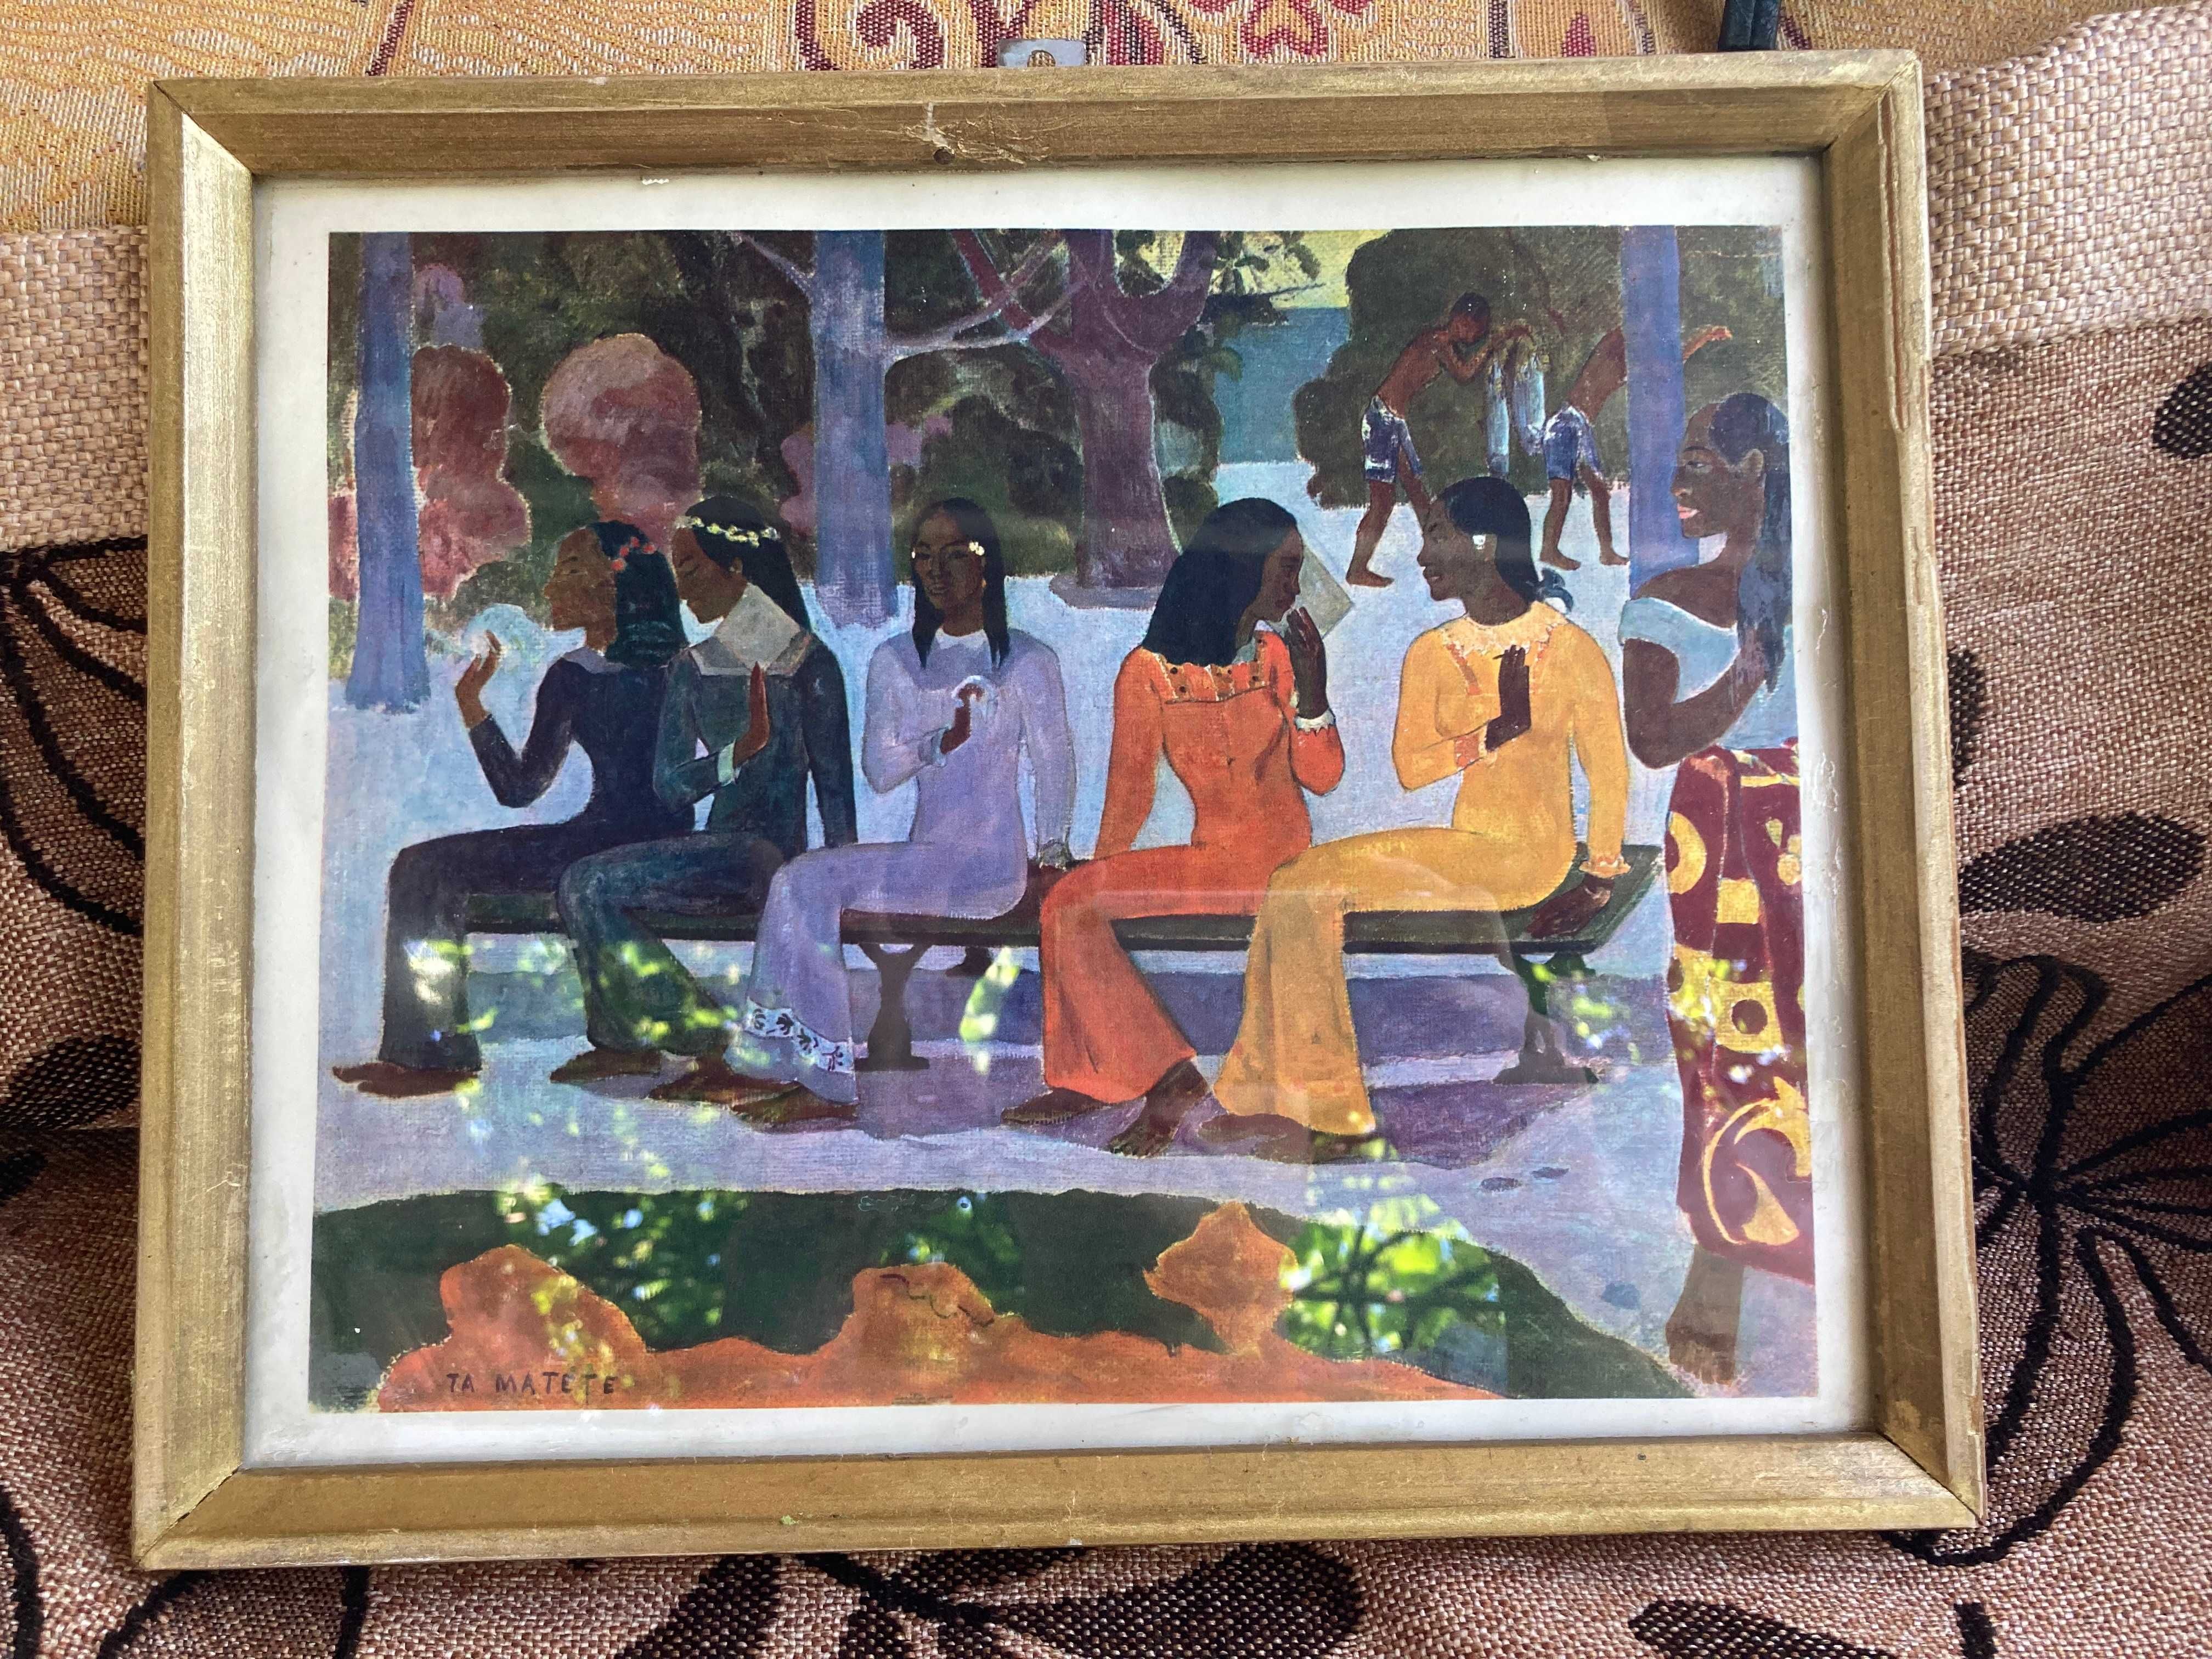 Tablou - Paul Gauguin - Ta Matete Nu vom merge la piata astazi 1892